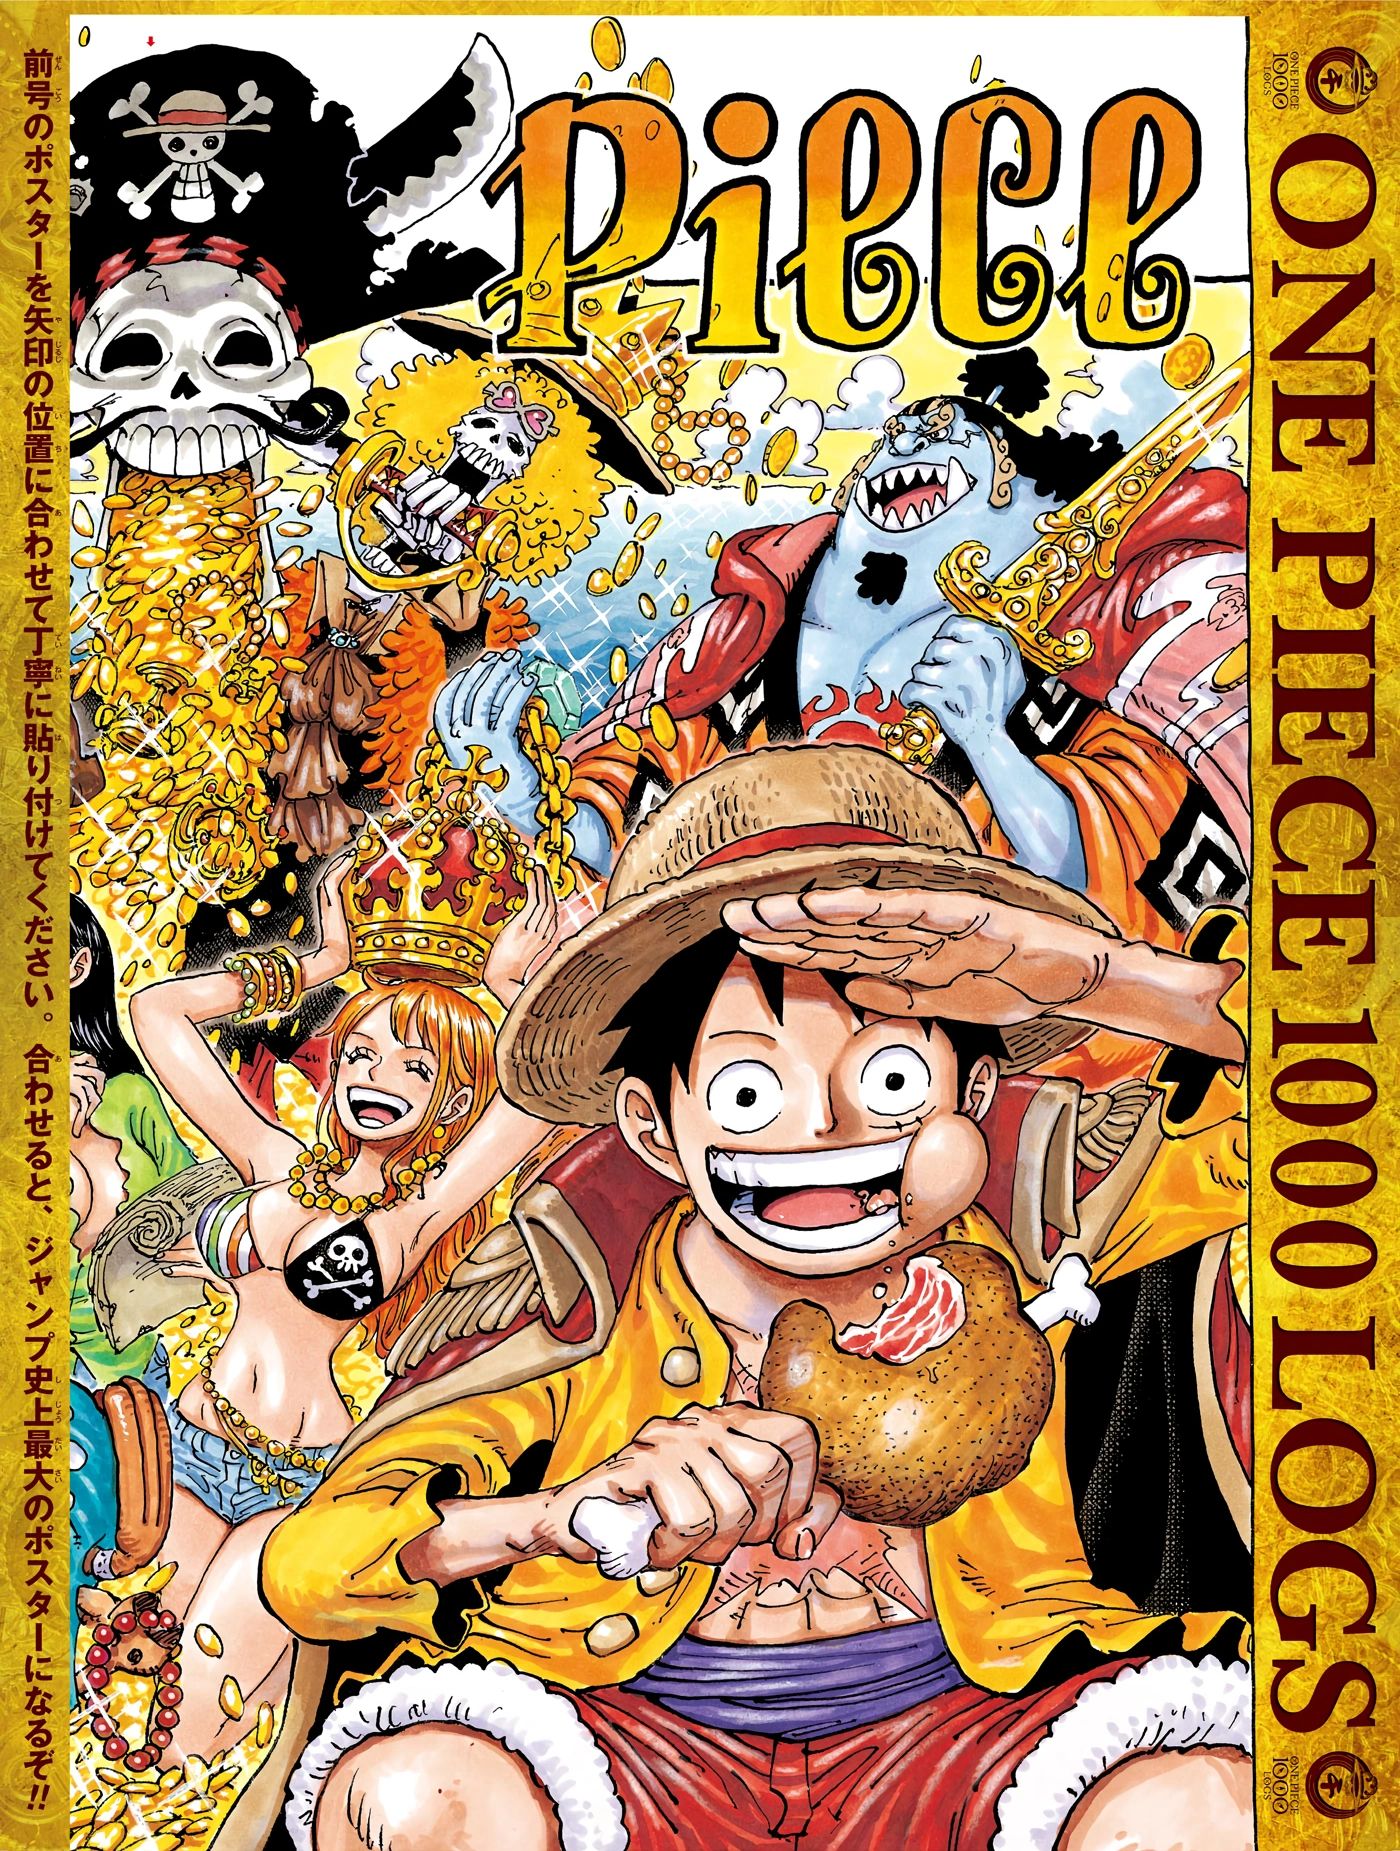 One Piece anime là một trong những bộ truyện tranh nổi tiếng nhất thế giới! Tình tiết đầy kịch tính, đồ họa đẹp và những nhân vật đầy màu sắc, tất cả đều khiến bộ anime này trở nên vô cùng hấp dẫn. Hãy cùng tham gia vào cuộc phiêu lưu của Luffy và đồng bọn để tìm kiếm kho báu One Piece trên Grand Line nào!